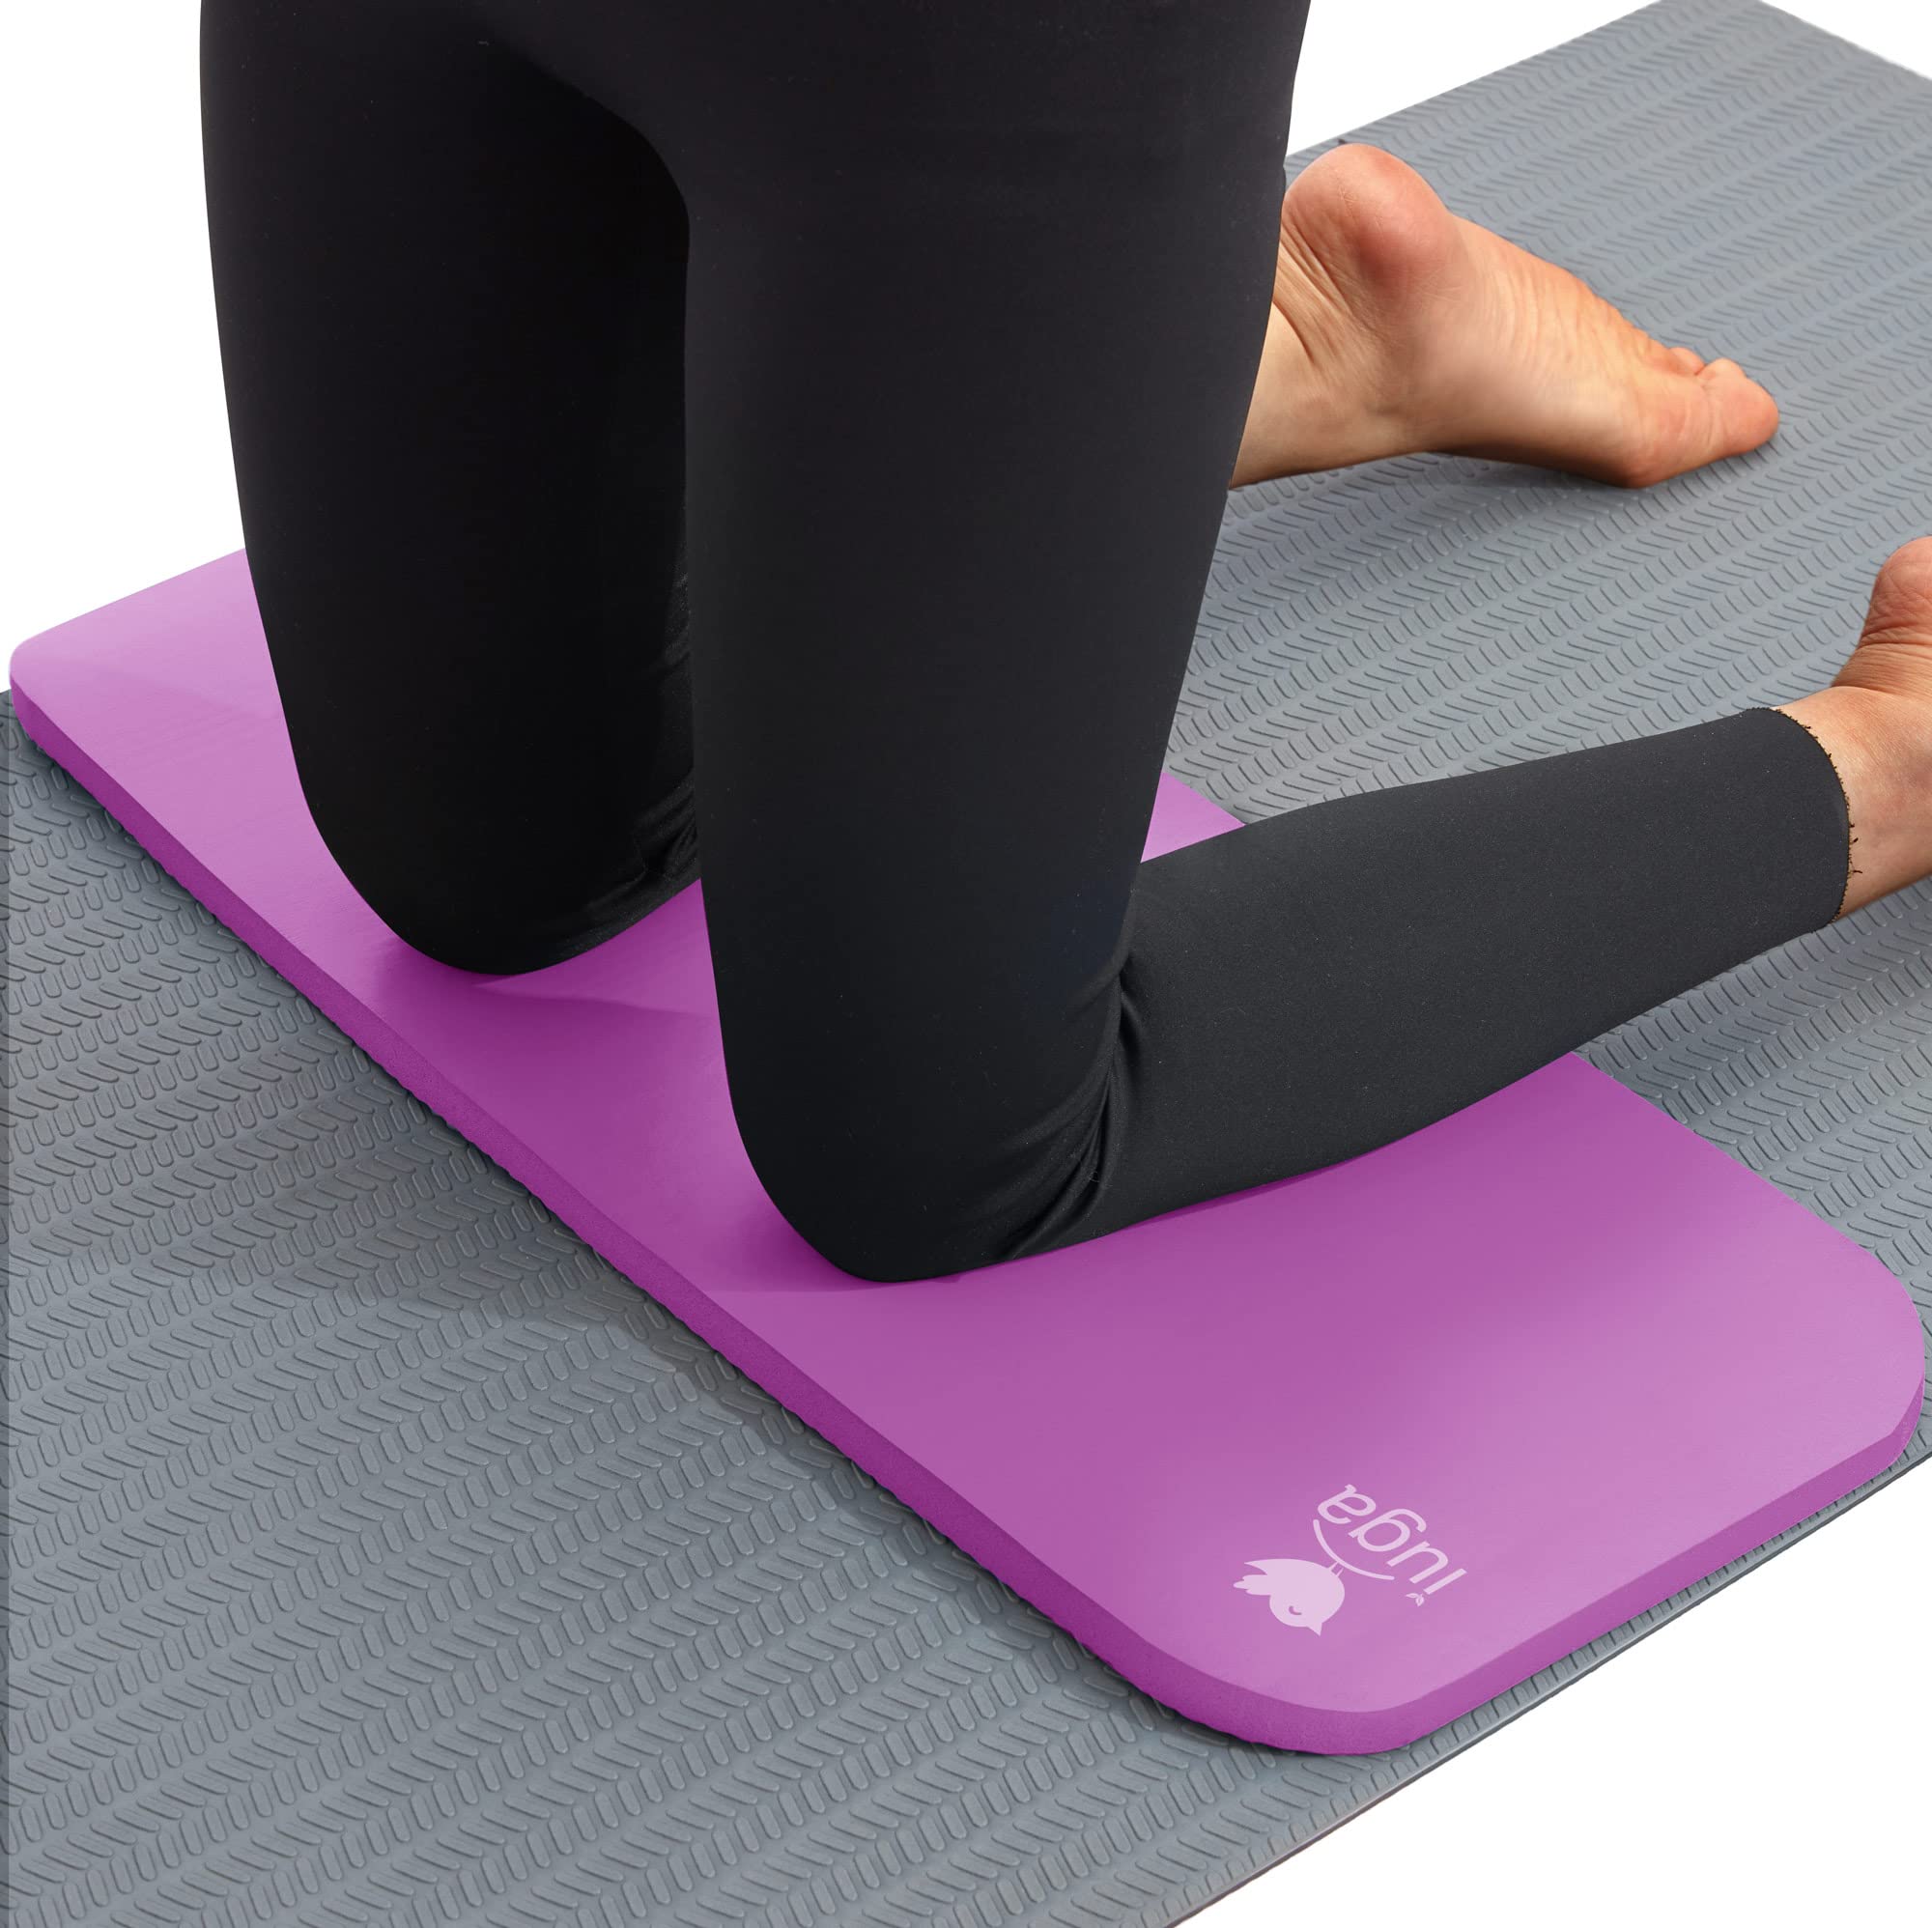 6 Ps Knee Pads For Yoga Extra Thik Yoga Wrist Pad Yoga Ushion Anti